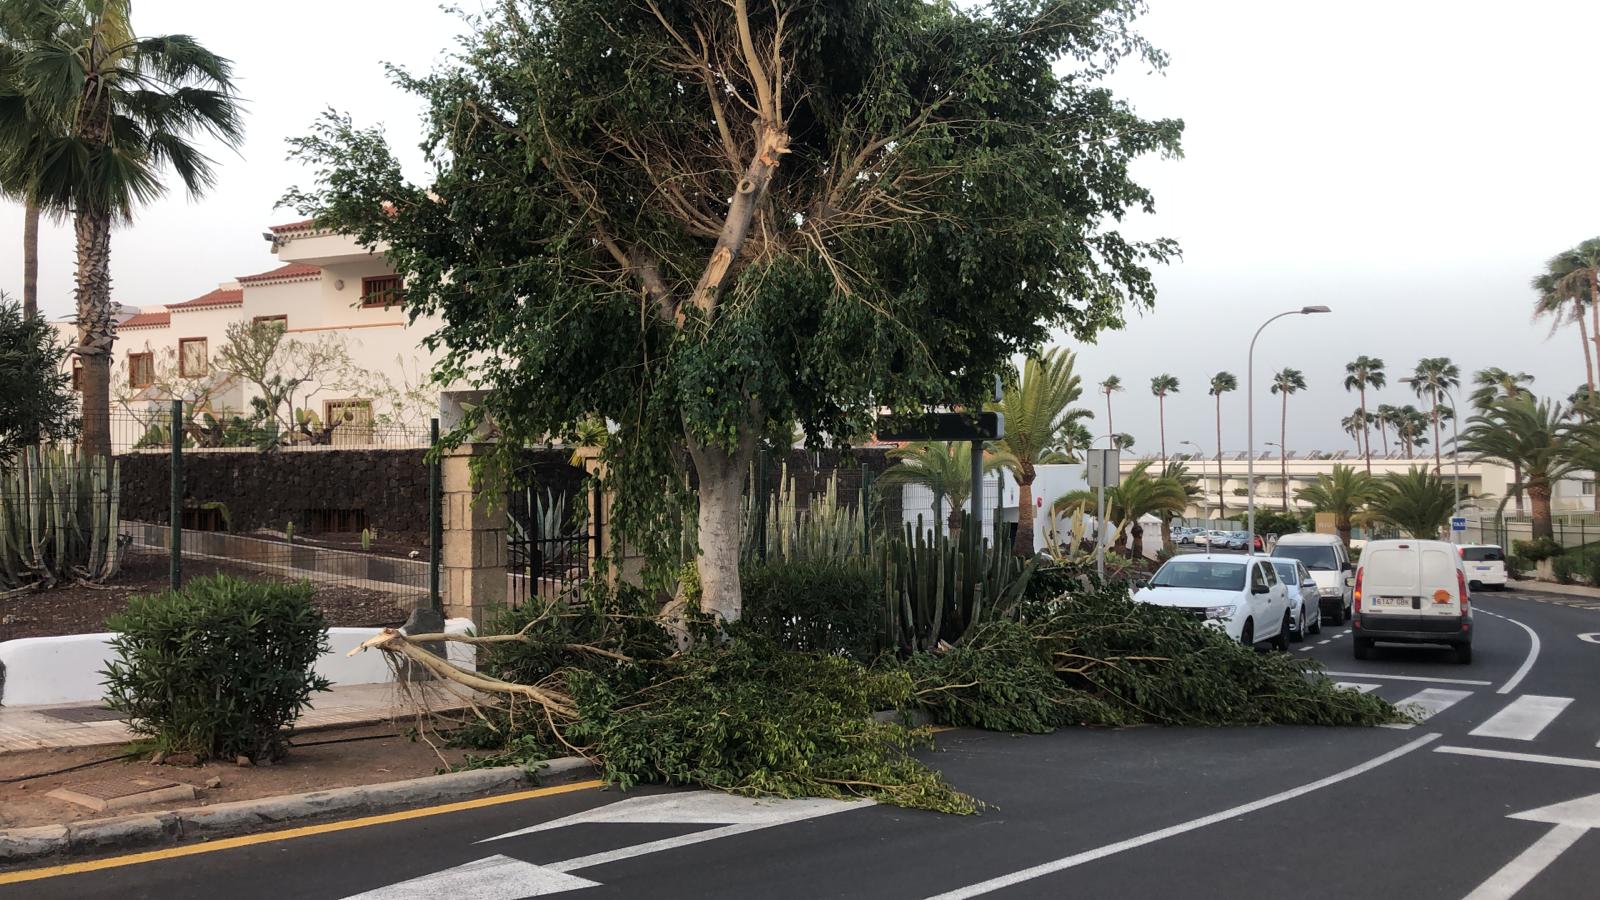 La tormenta causó daños materiales en varios puntos del norte de Tenerife. DA